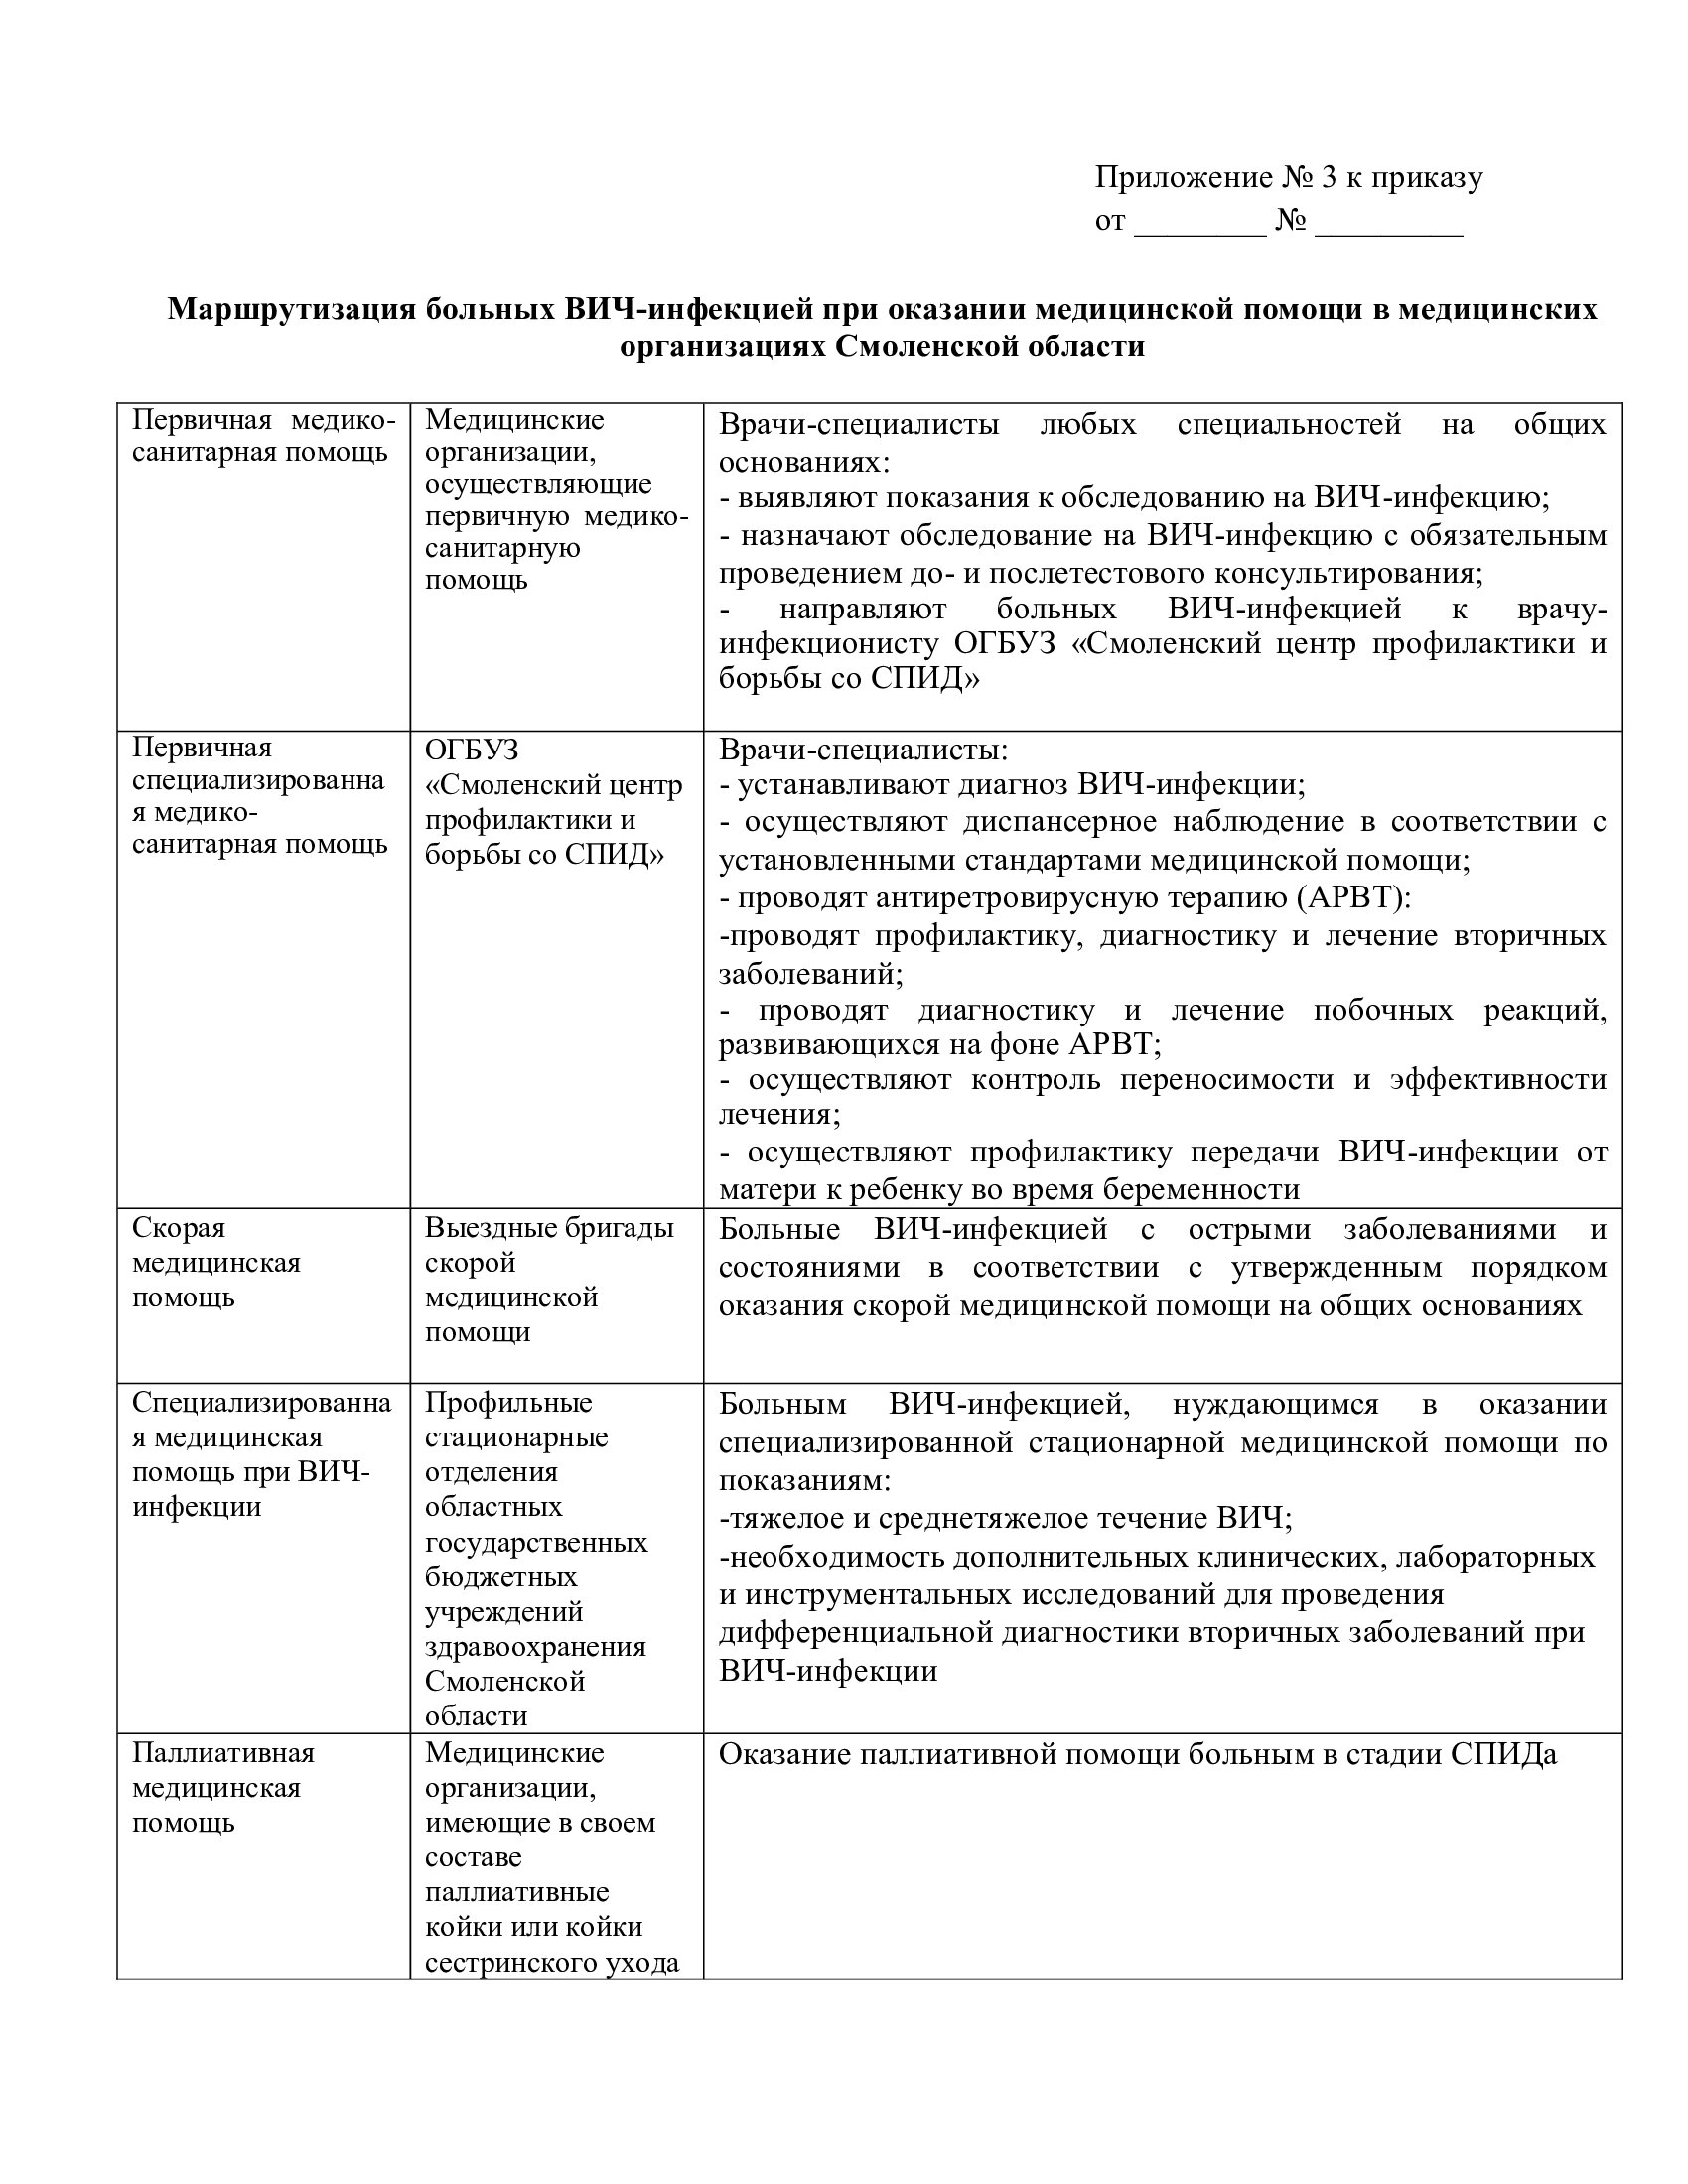 Маршрутизация больных ВИЧ-инфекцией при оказании медицинской помощи в медицинских организациях Смоленской области